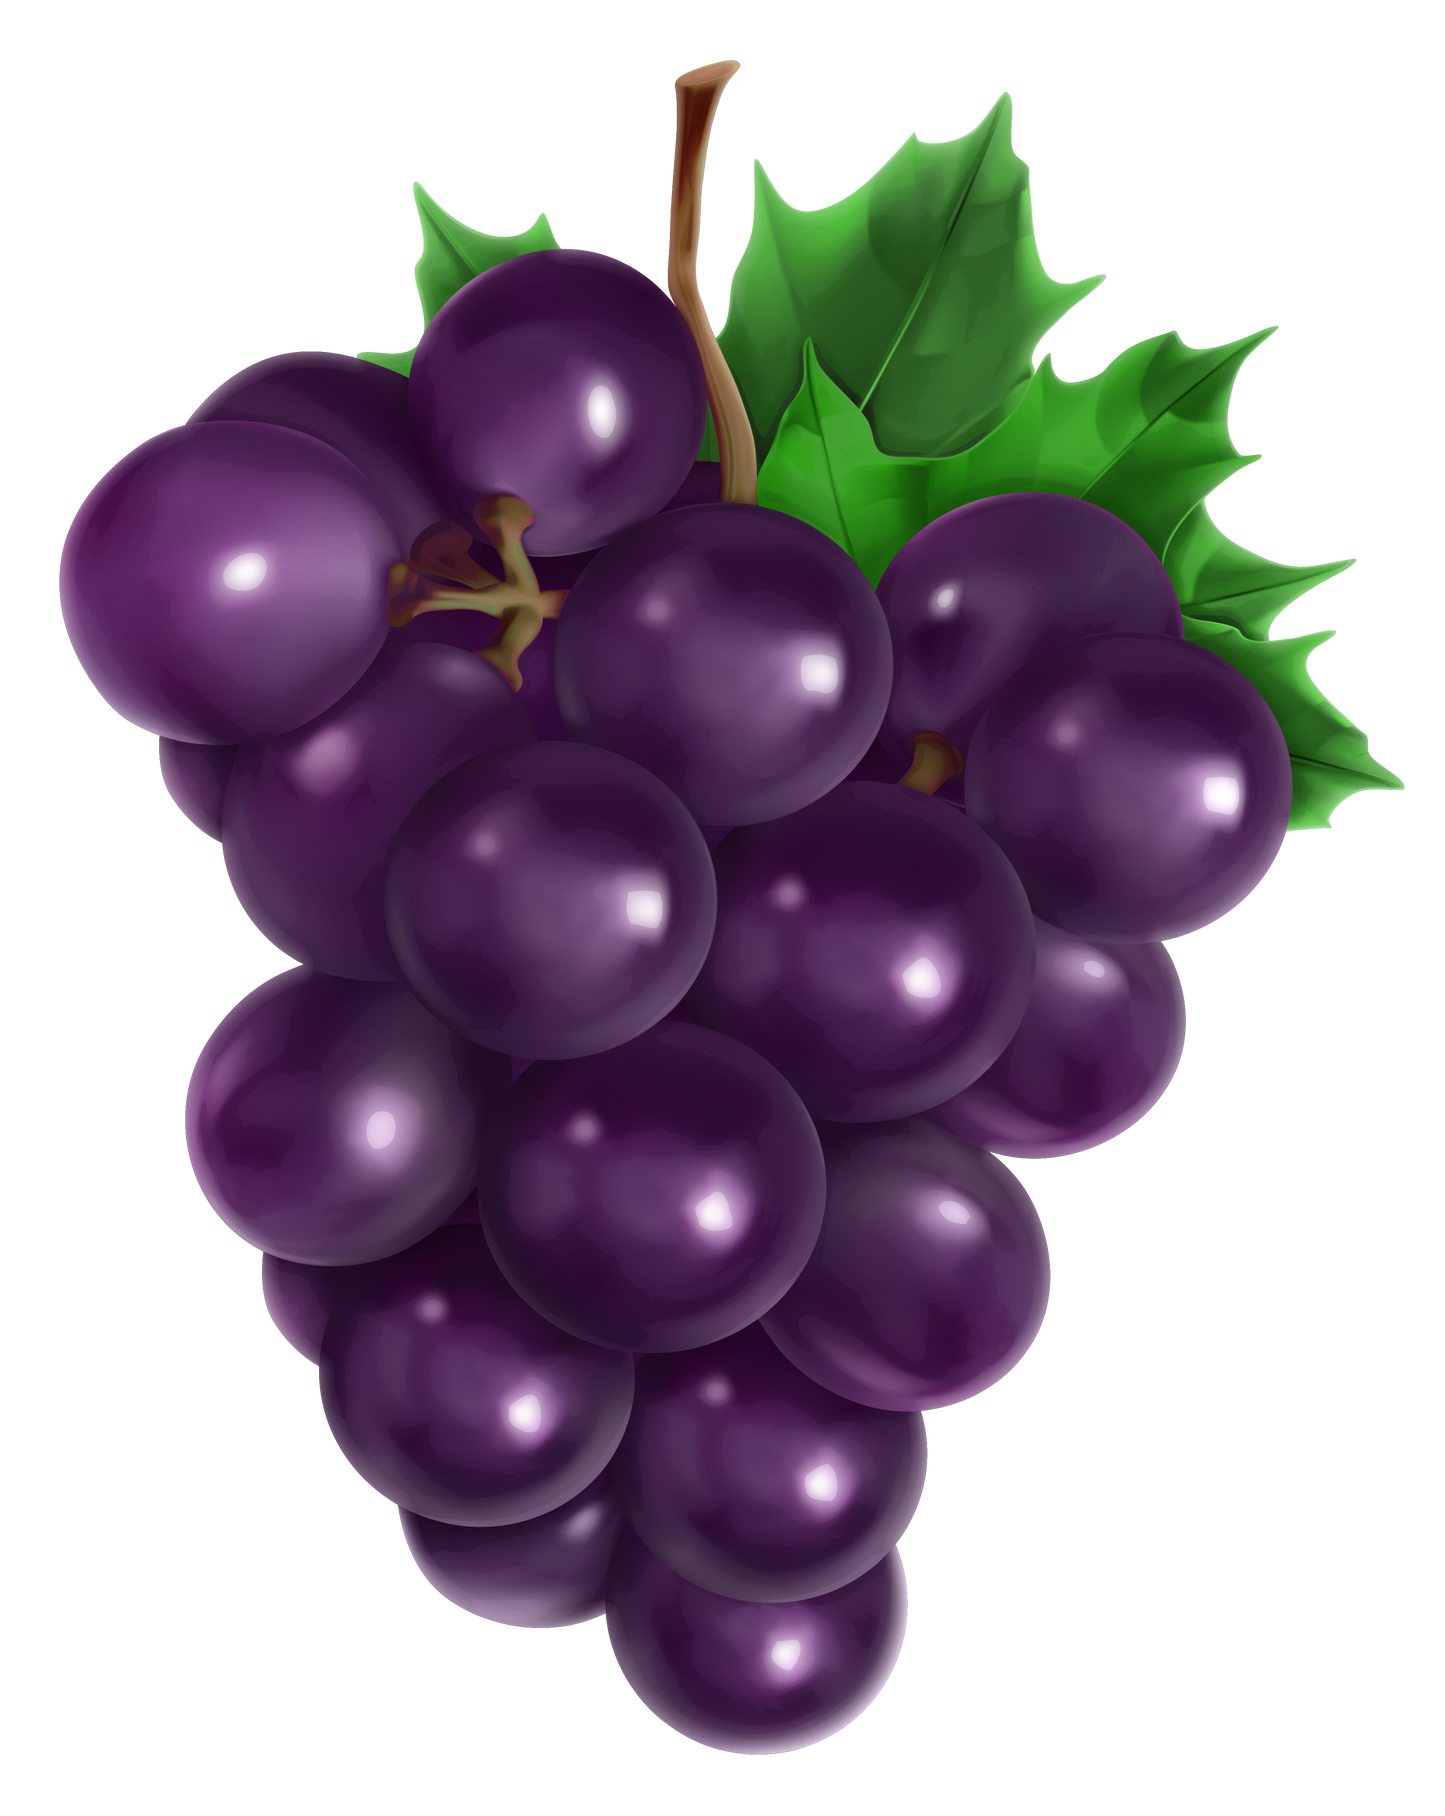 Grapes - Shiny Purple